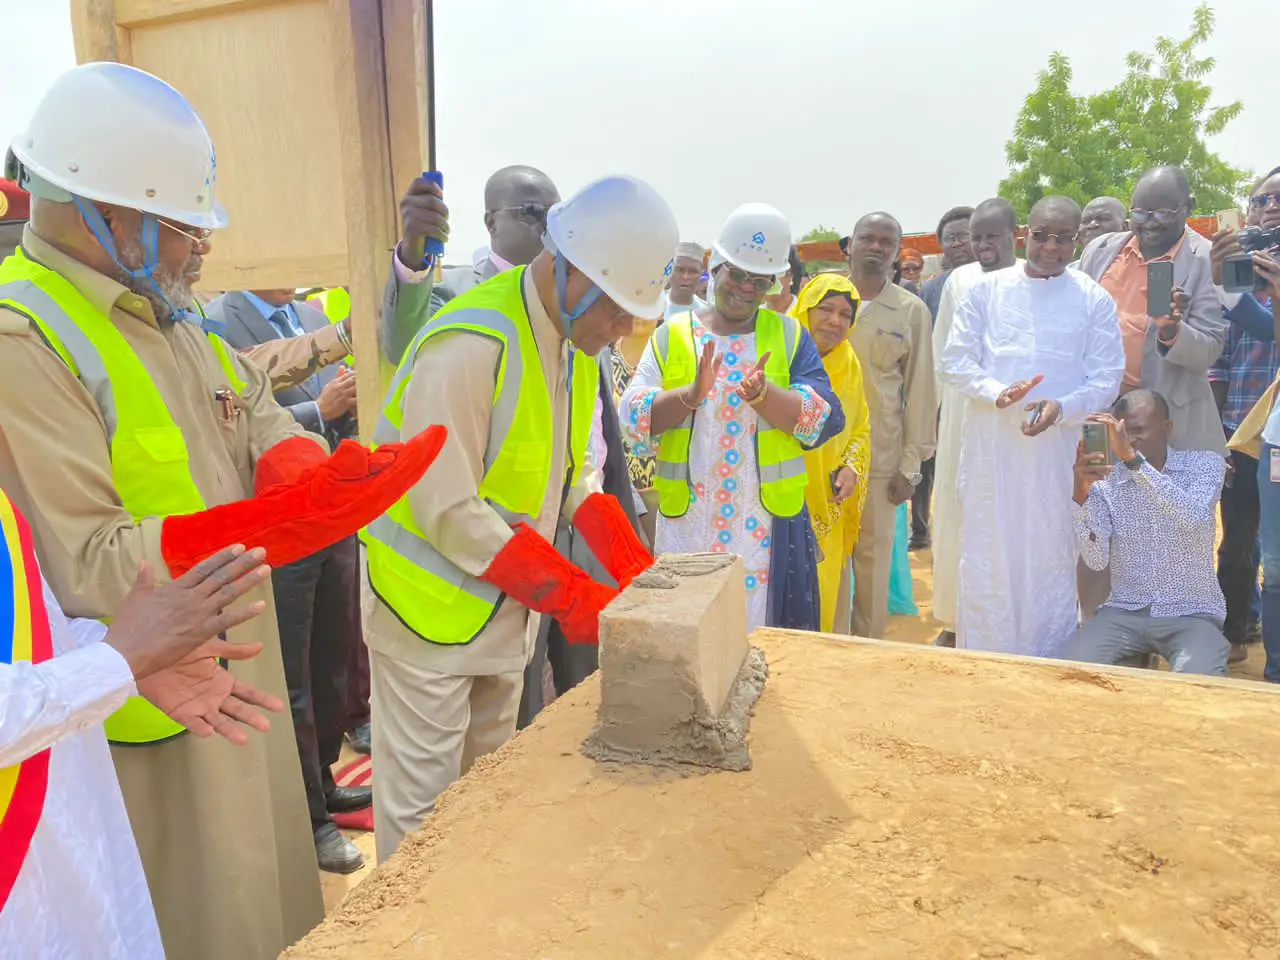 N'Djamena : les travaux de construction des digues ont débuté dans le 9ème arrondissement